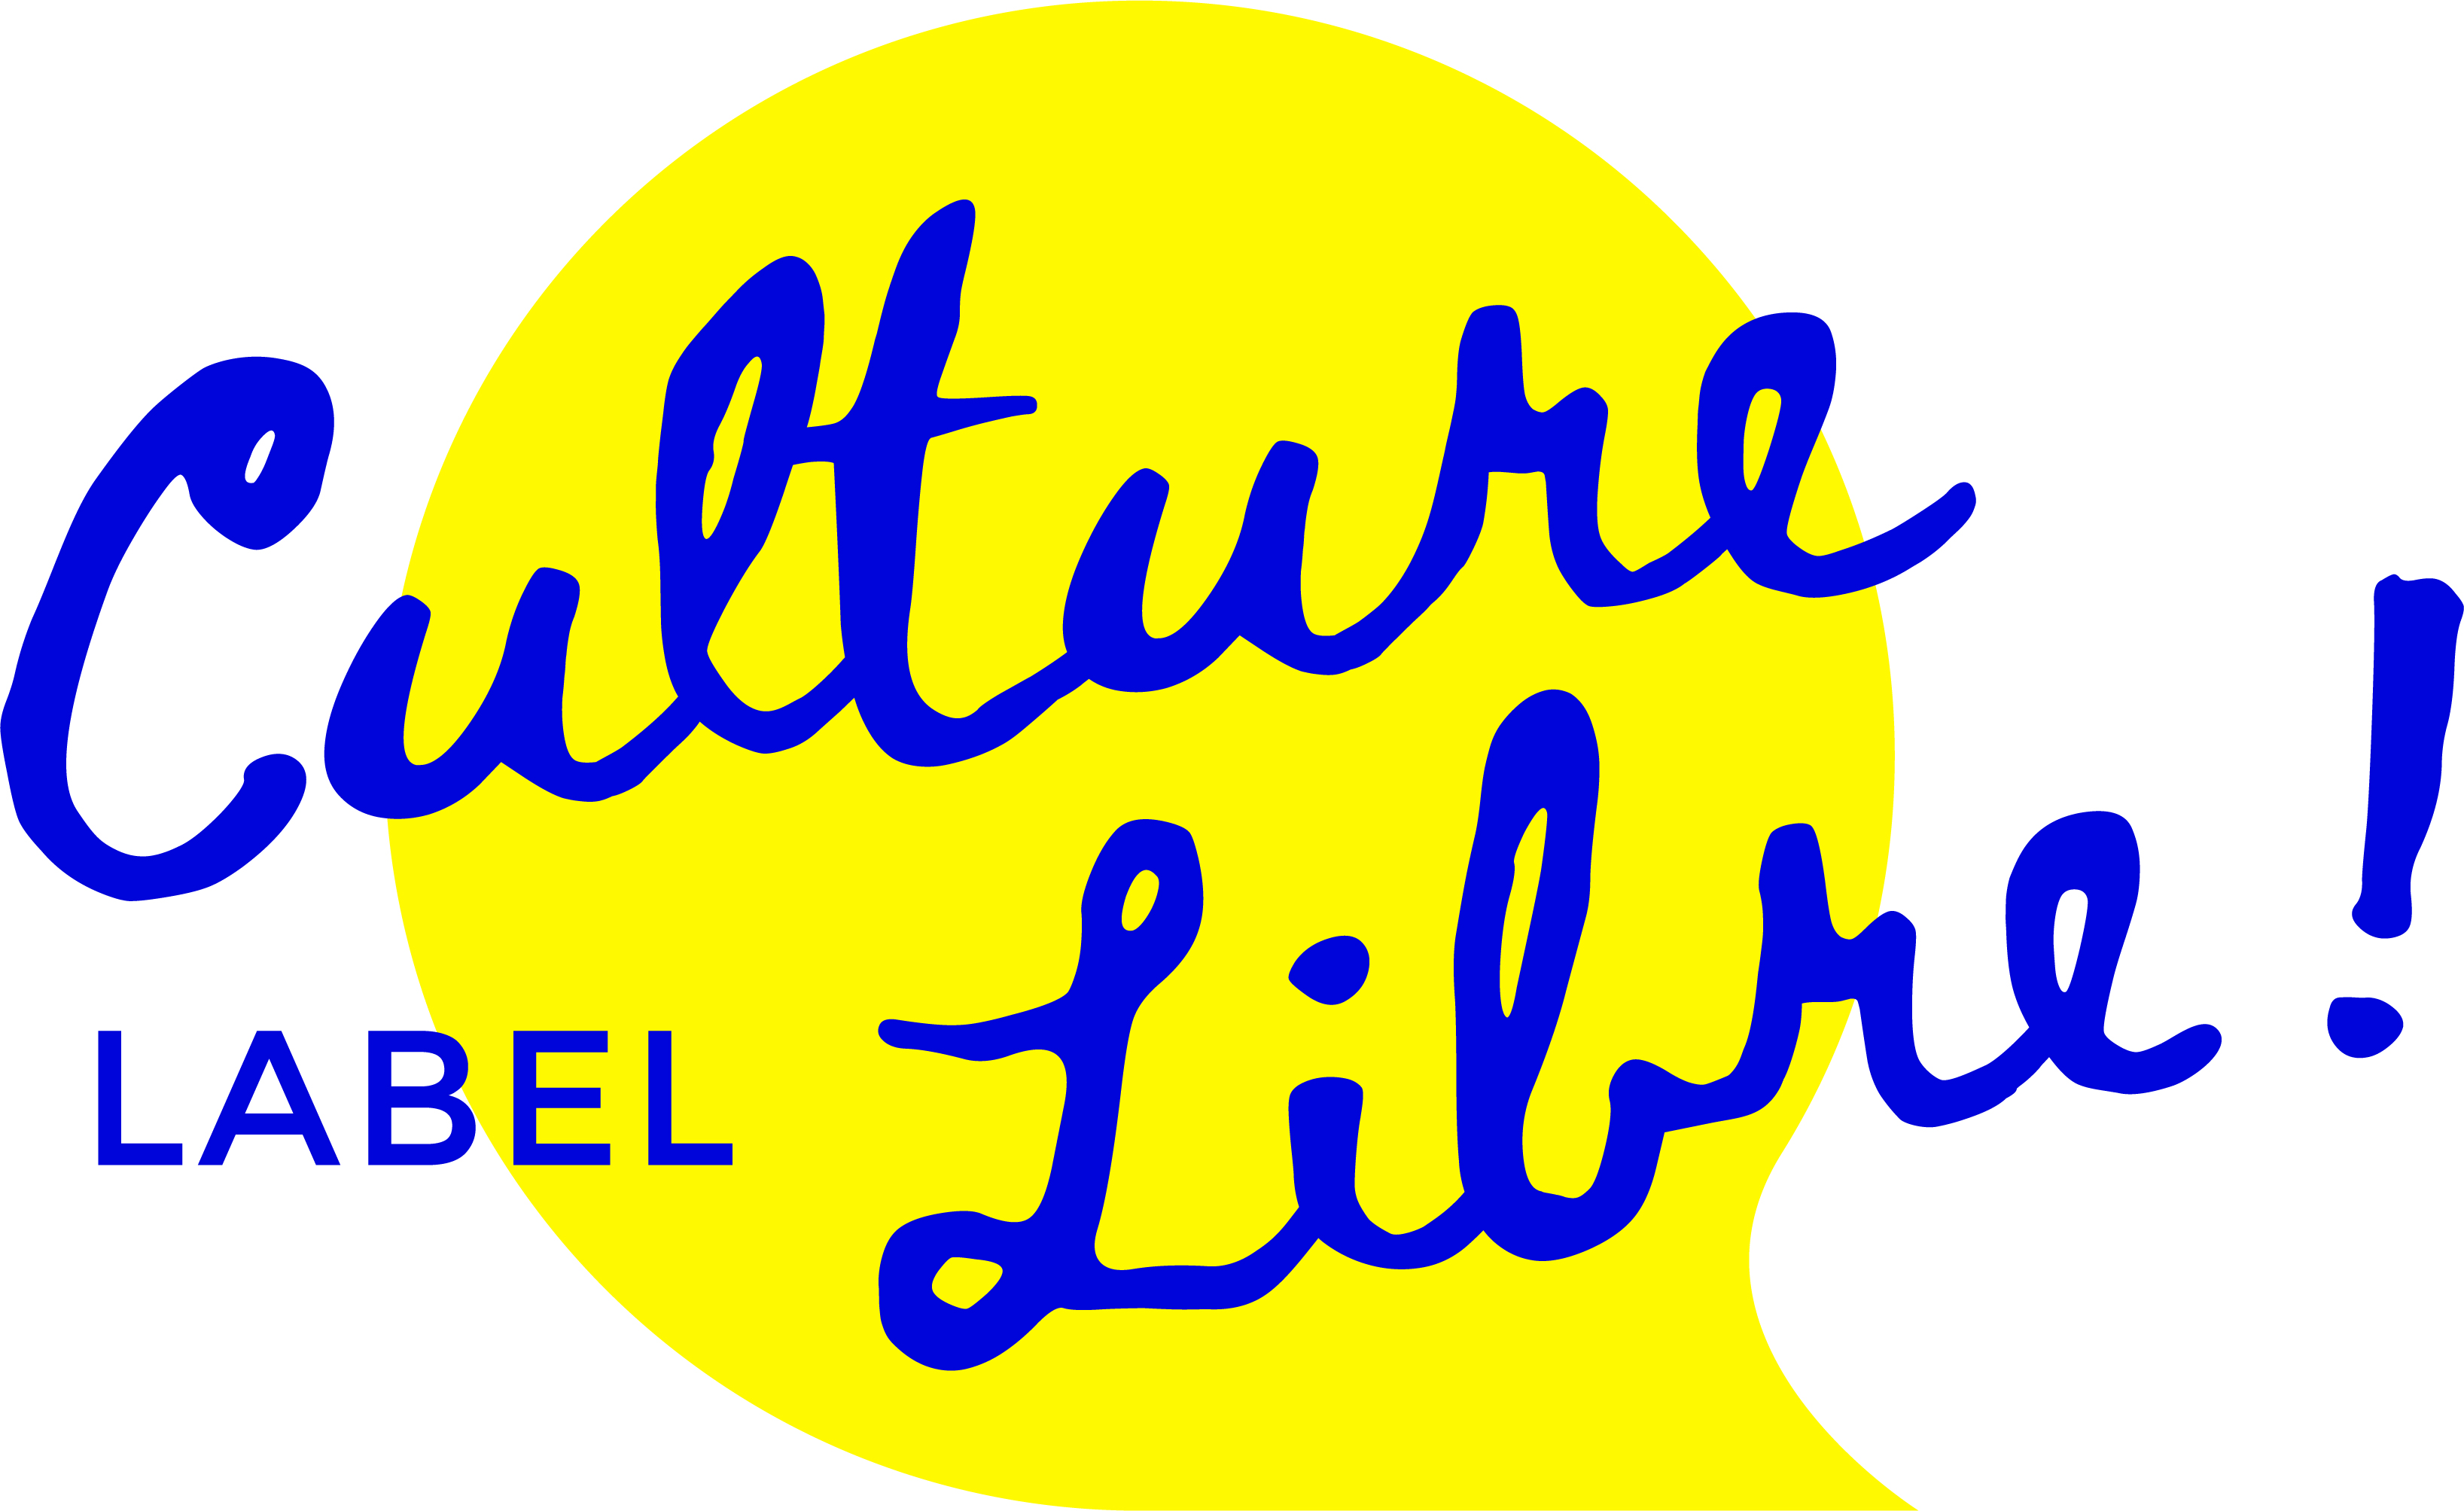 Logo du label Culture Libre écrit en bleu sur fond jaune, avec un point d'exclamation qui correspond au 1er niveau de labellisation